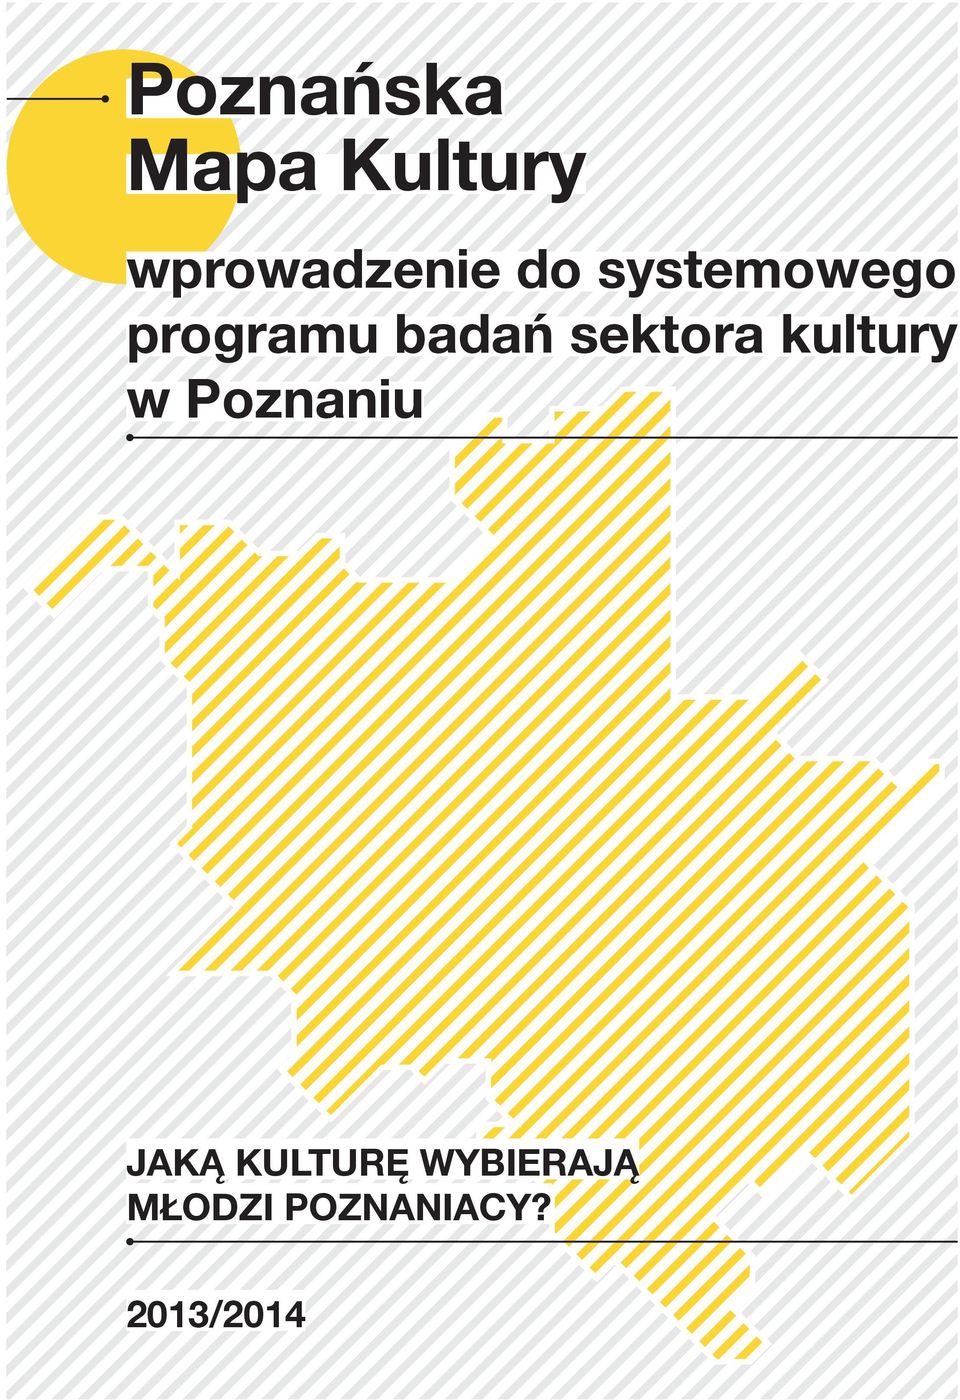 sektora kultury w Poznaniu JAKĄ